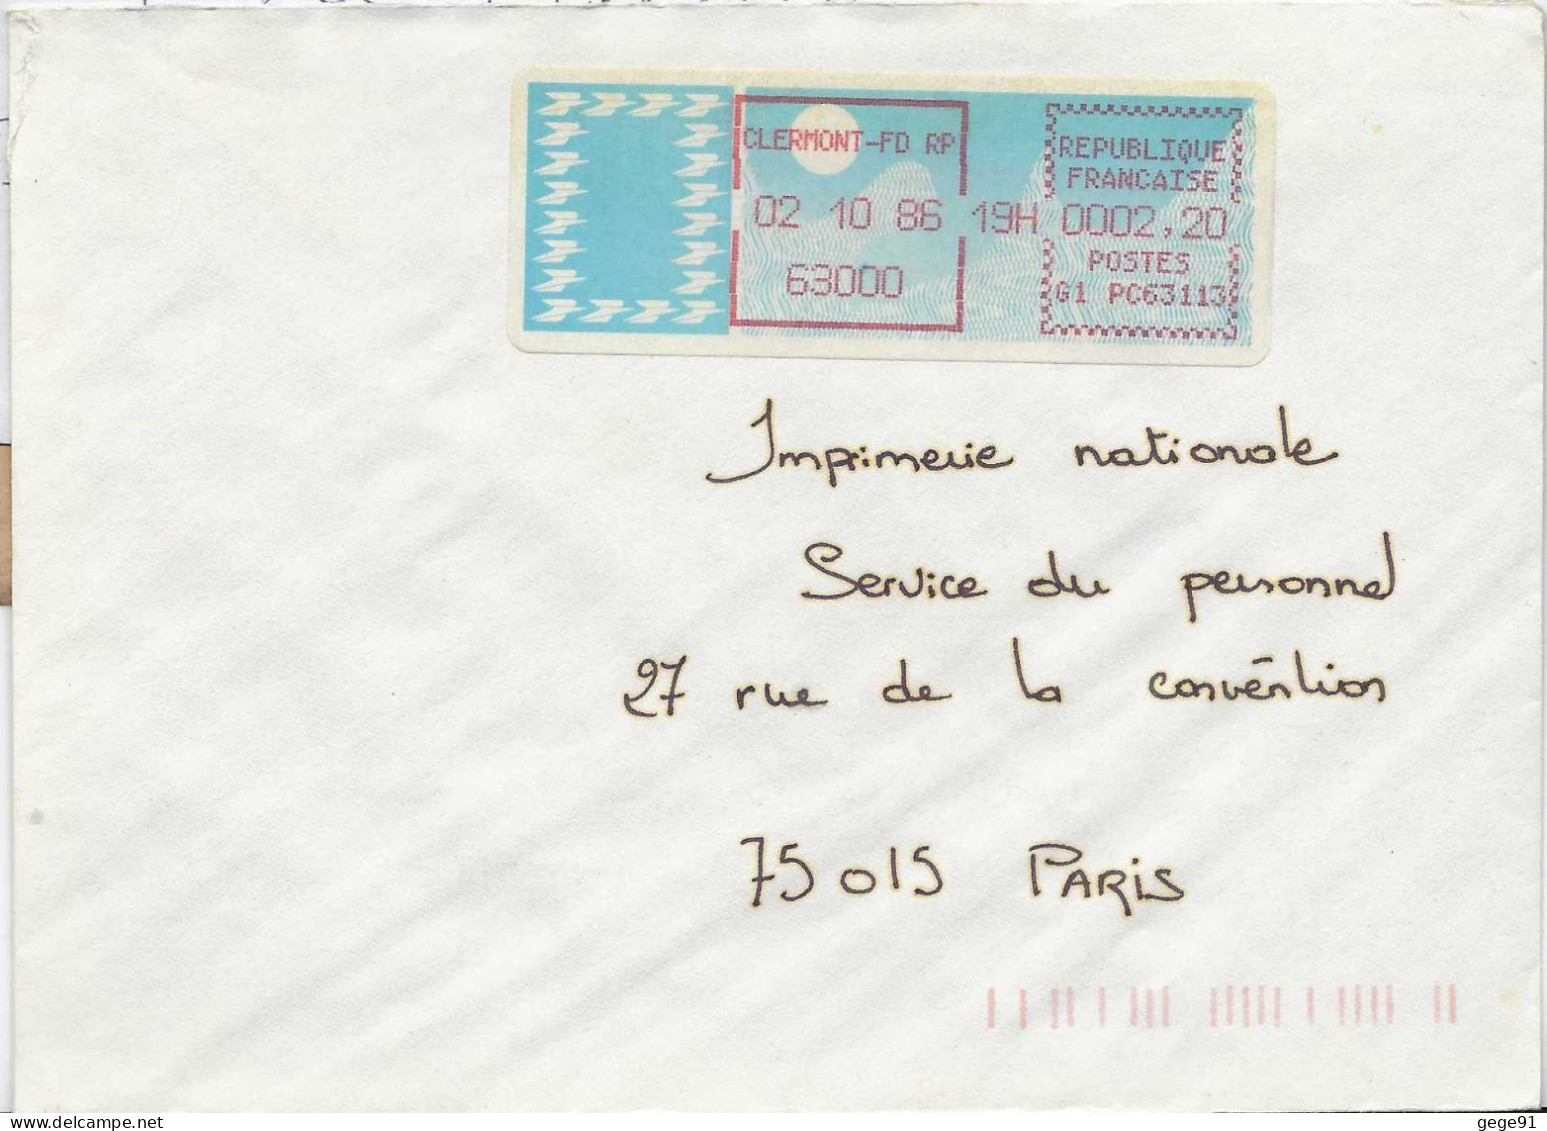 Vignette D'affranchissement De Guichet - MOG - Clermont Ferrand RP - Puy De Dôme - 1985 « Carrier » Paper